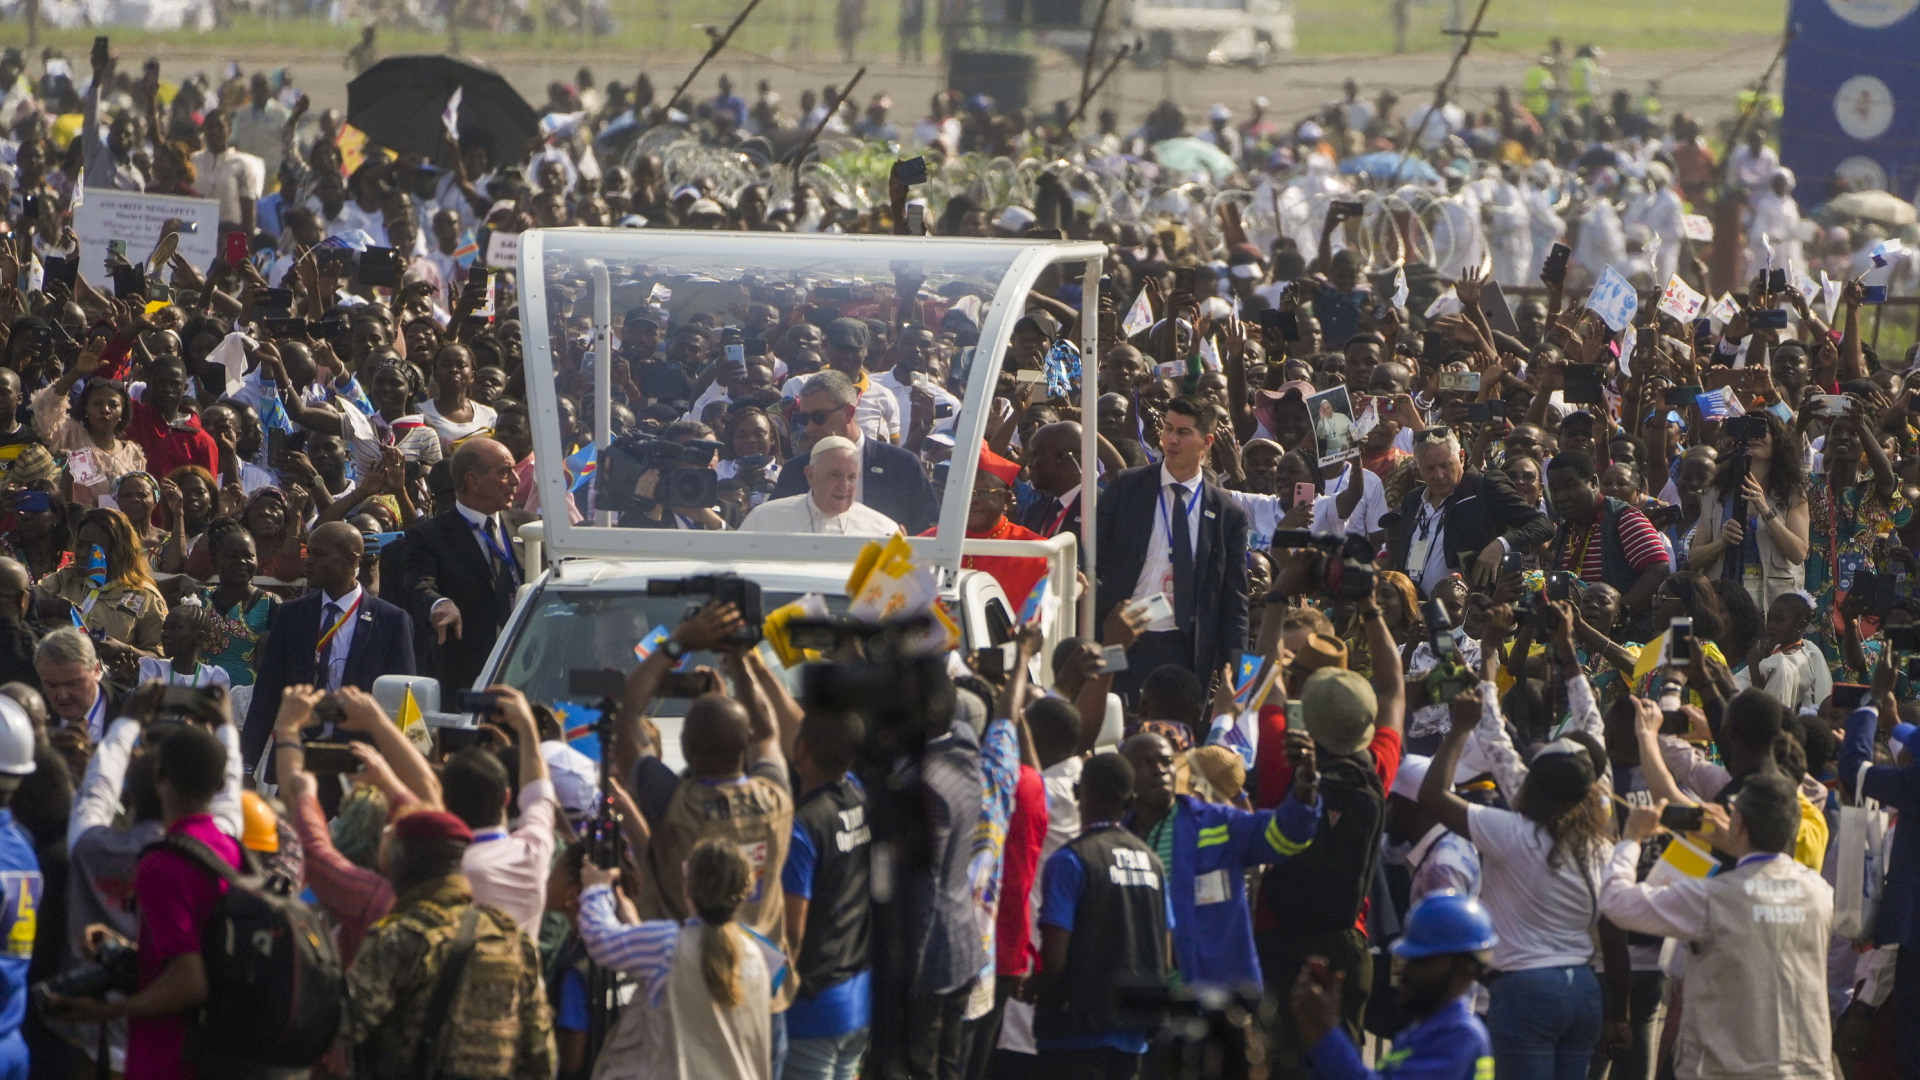 Papst Franziskus in seinem Papamobil, um ringt von Gläubigen, während einer Messe in Kinshasa, Demokratische Republik Kongo.  | AP